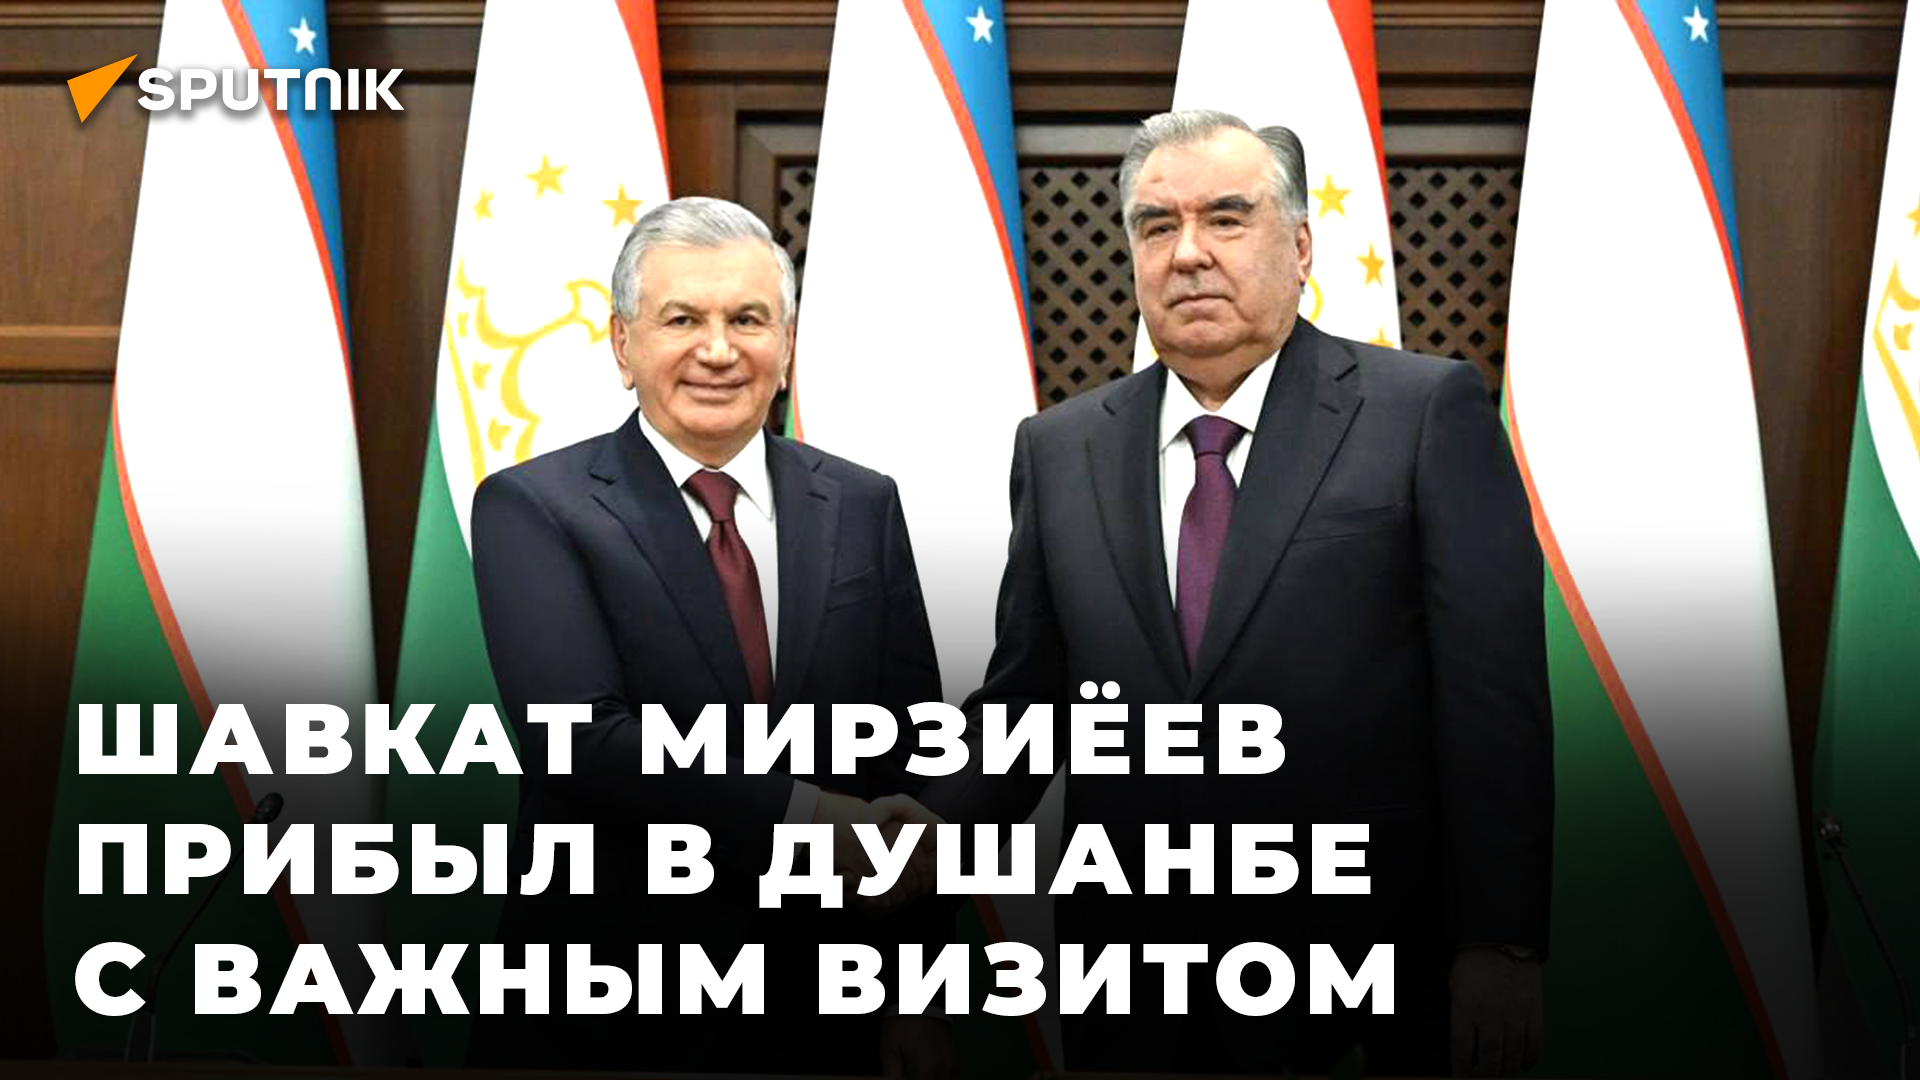 Лидеры Таджикистана и Узбекистана встретились в Душанбе